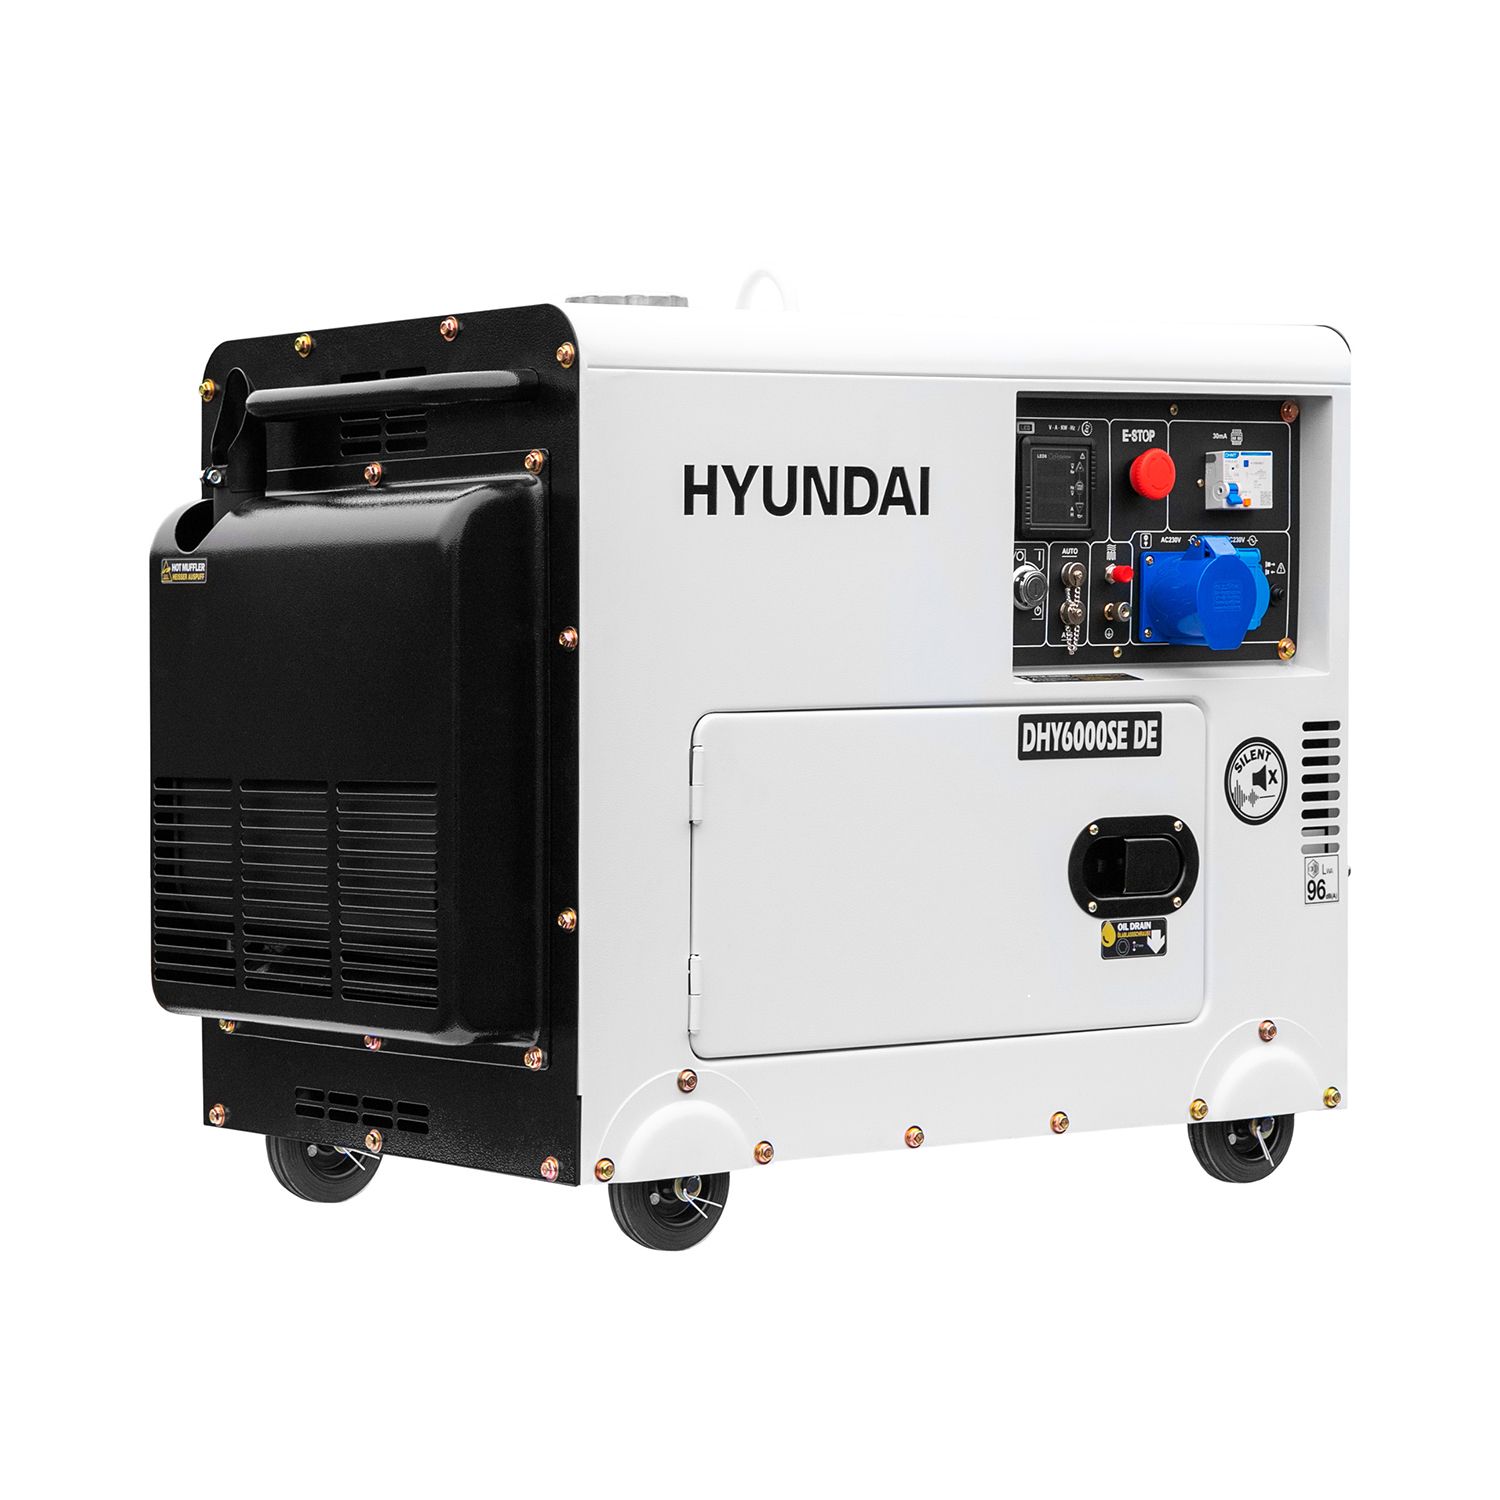 Hyundai diesel generator 5,3 kW